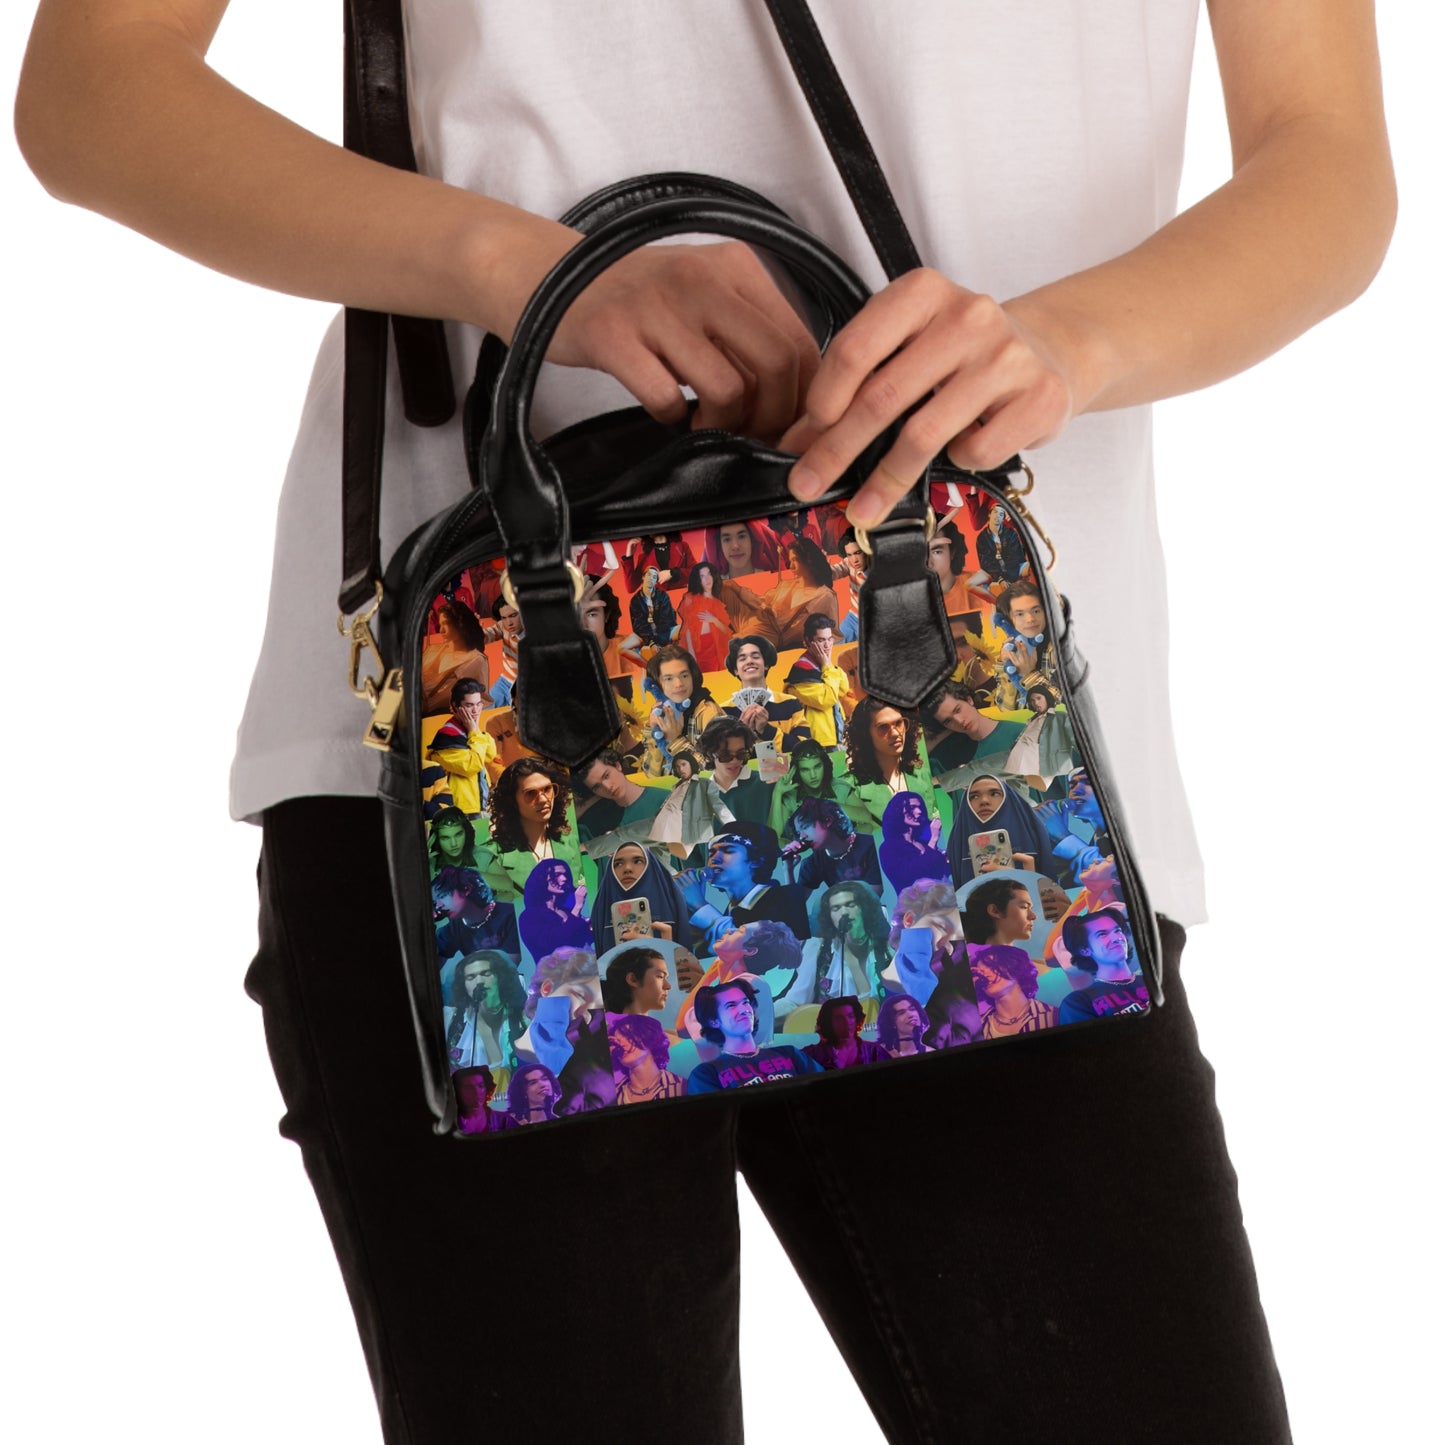 Conan Grey Rainbow Photo Collage Shoulder Handbag